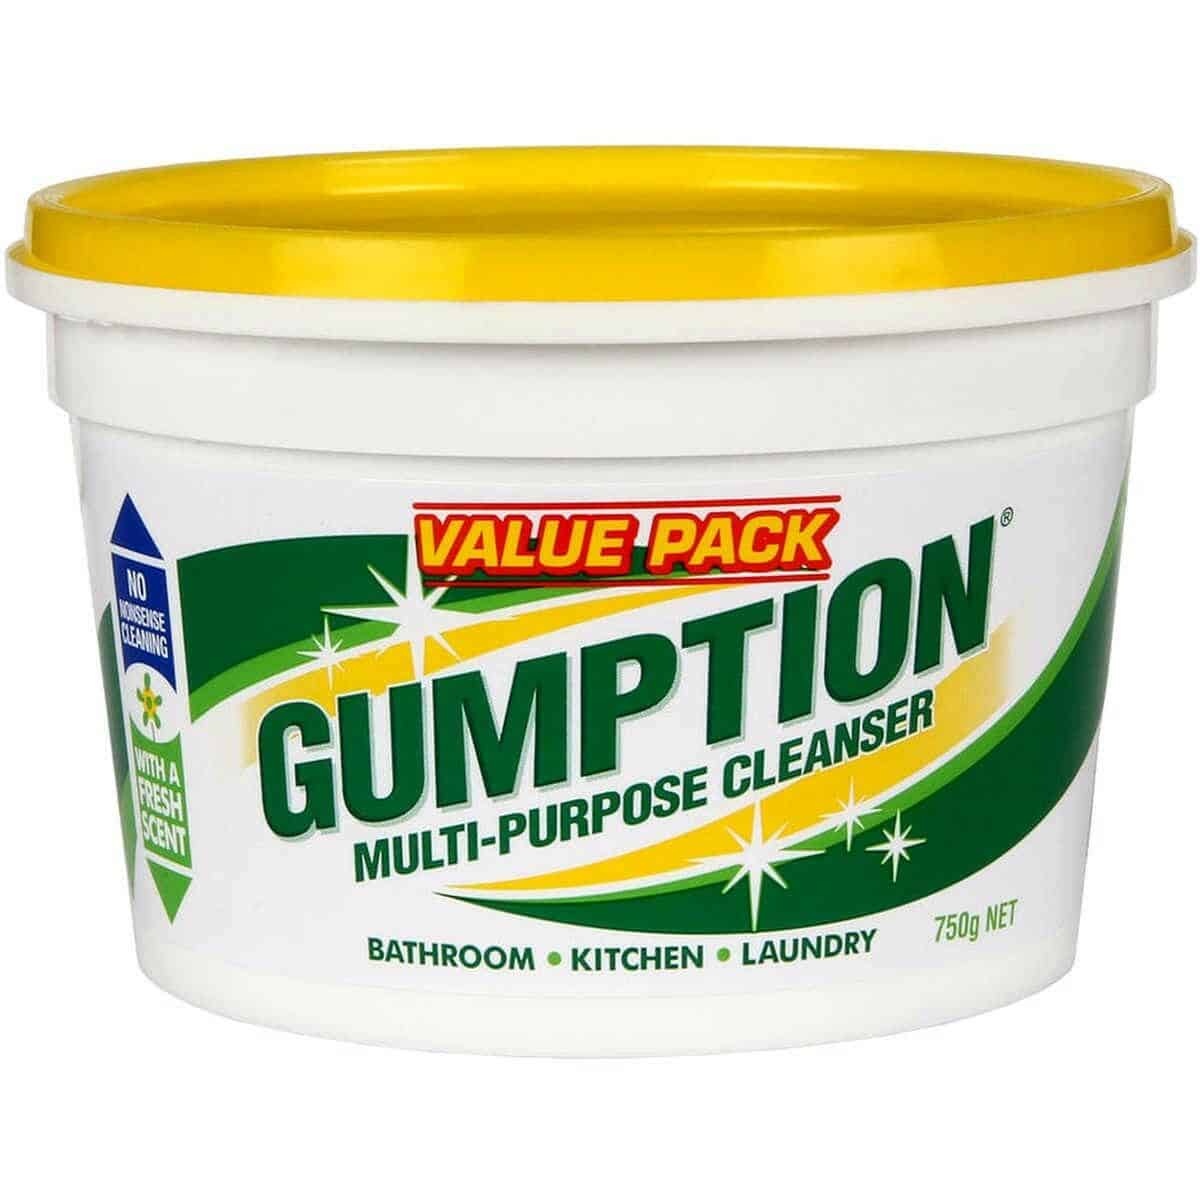 GUMPTION Multi Purpose Cleaner